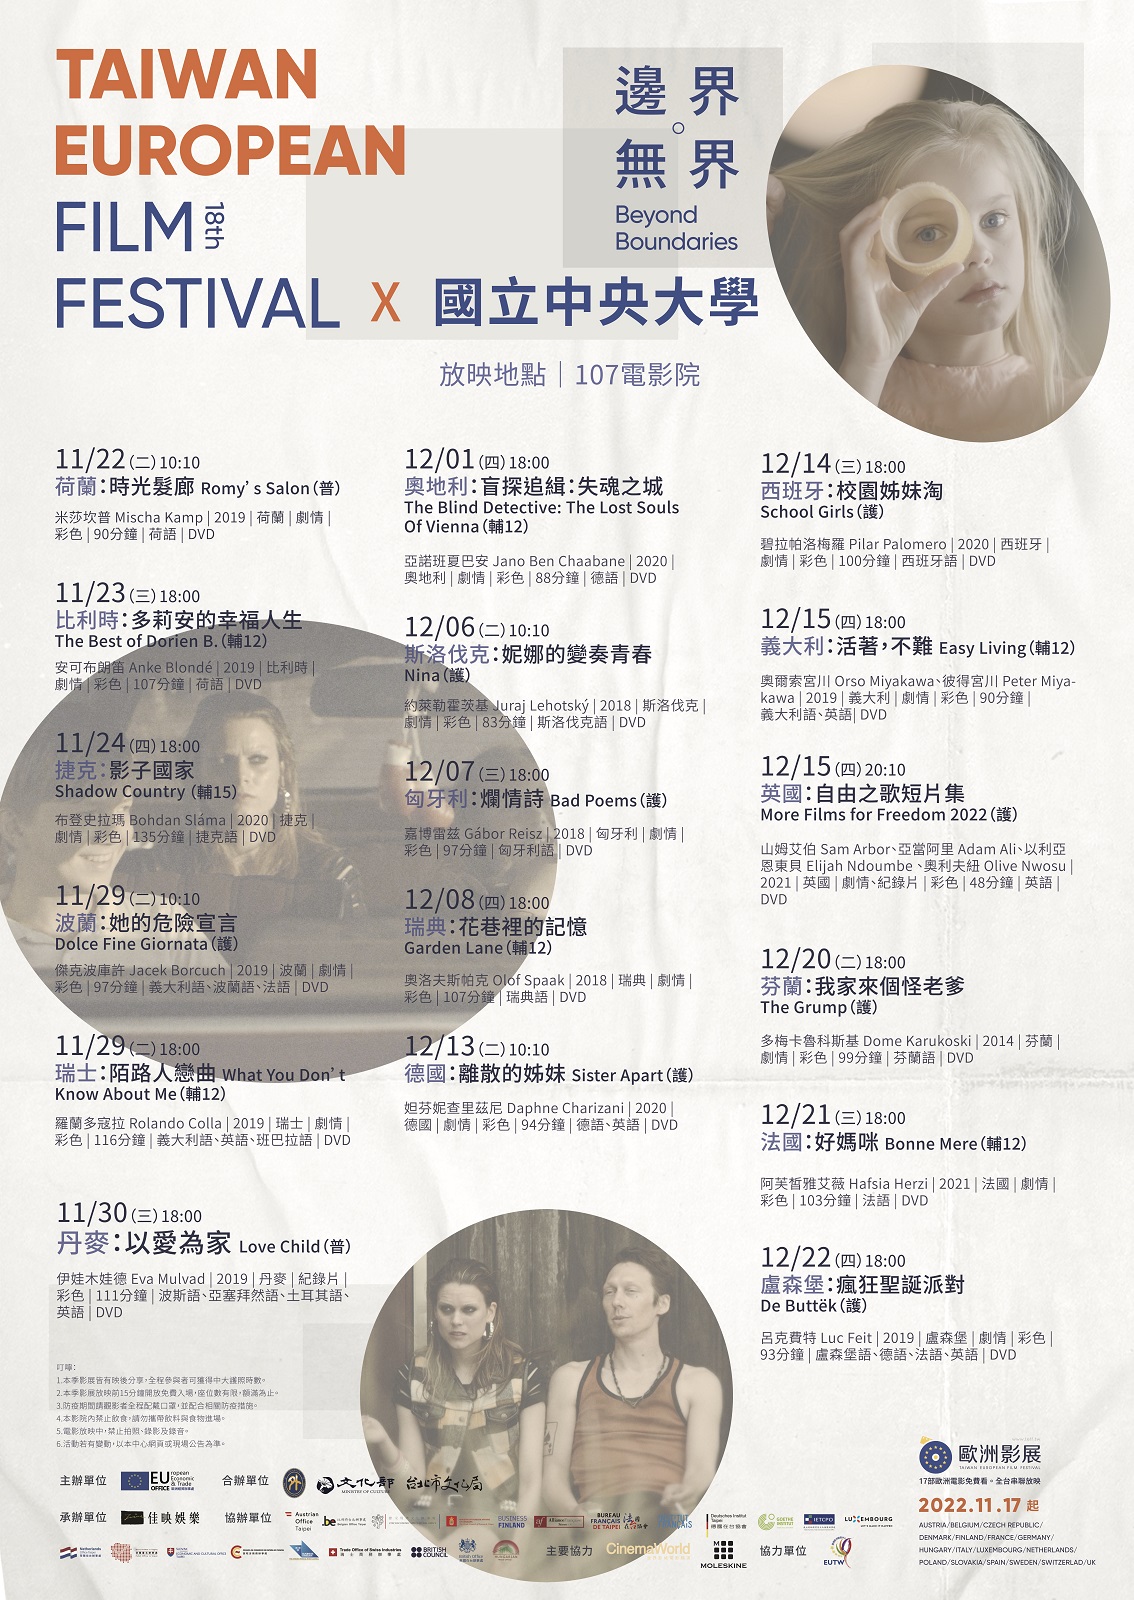 Taiwan European Film Festival